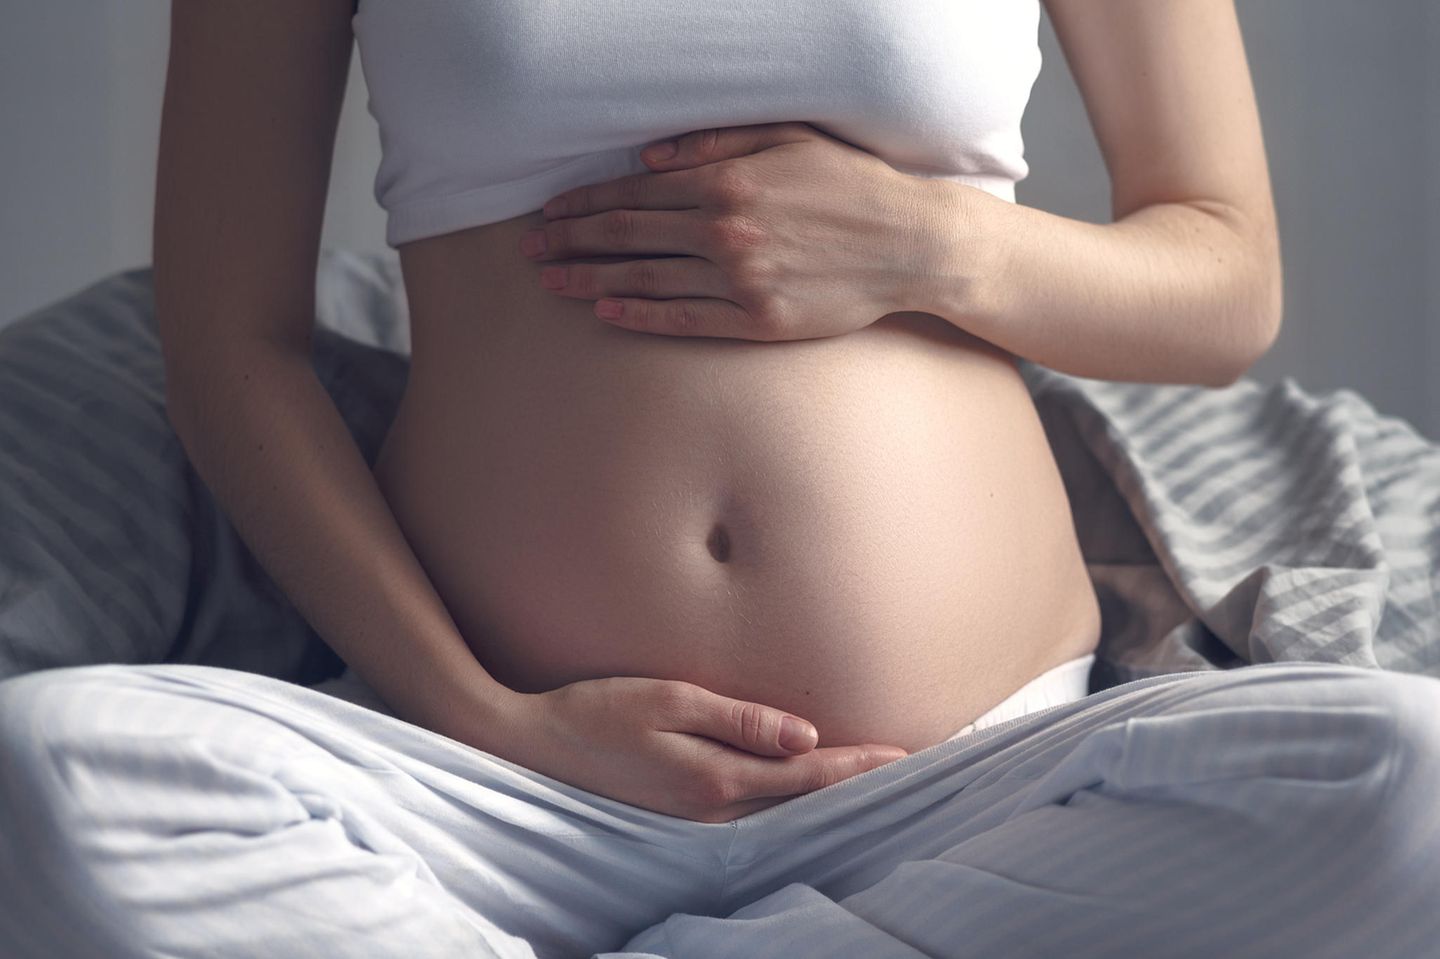 Schwangerschaft unbemerkt: "ich glaube ich kriege ein Kind": Frau mit schwangerem Bauch